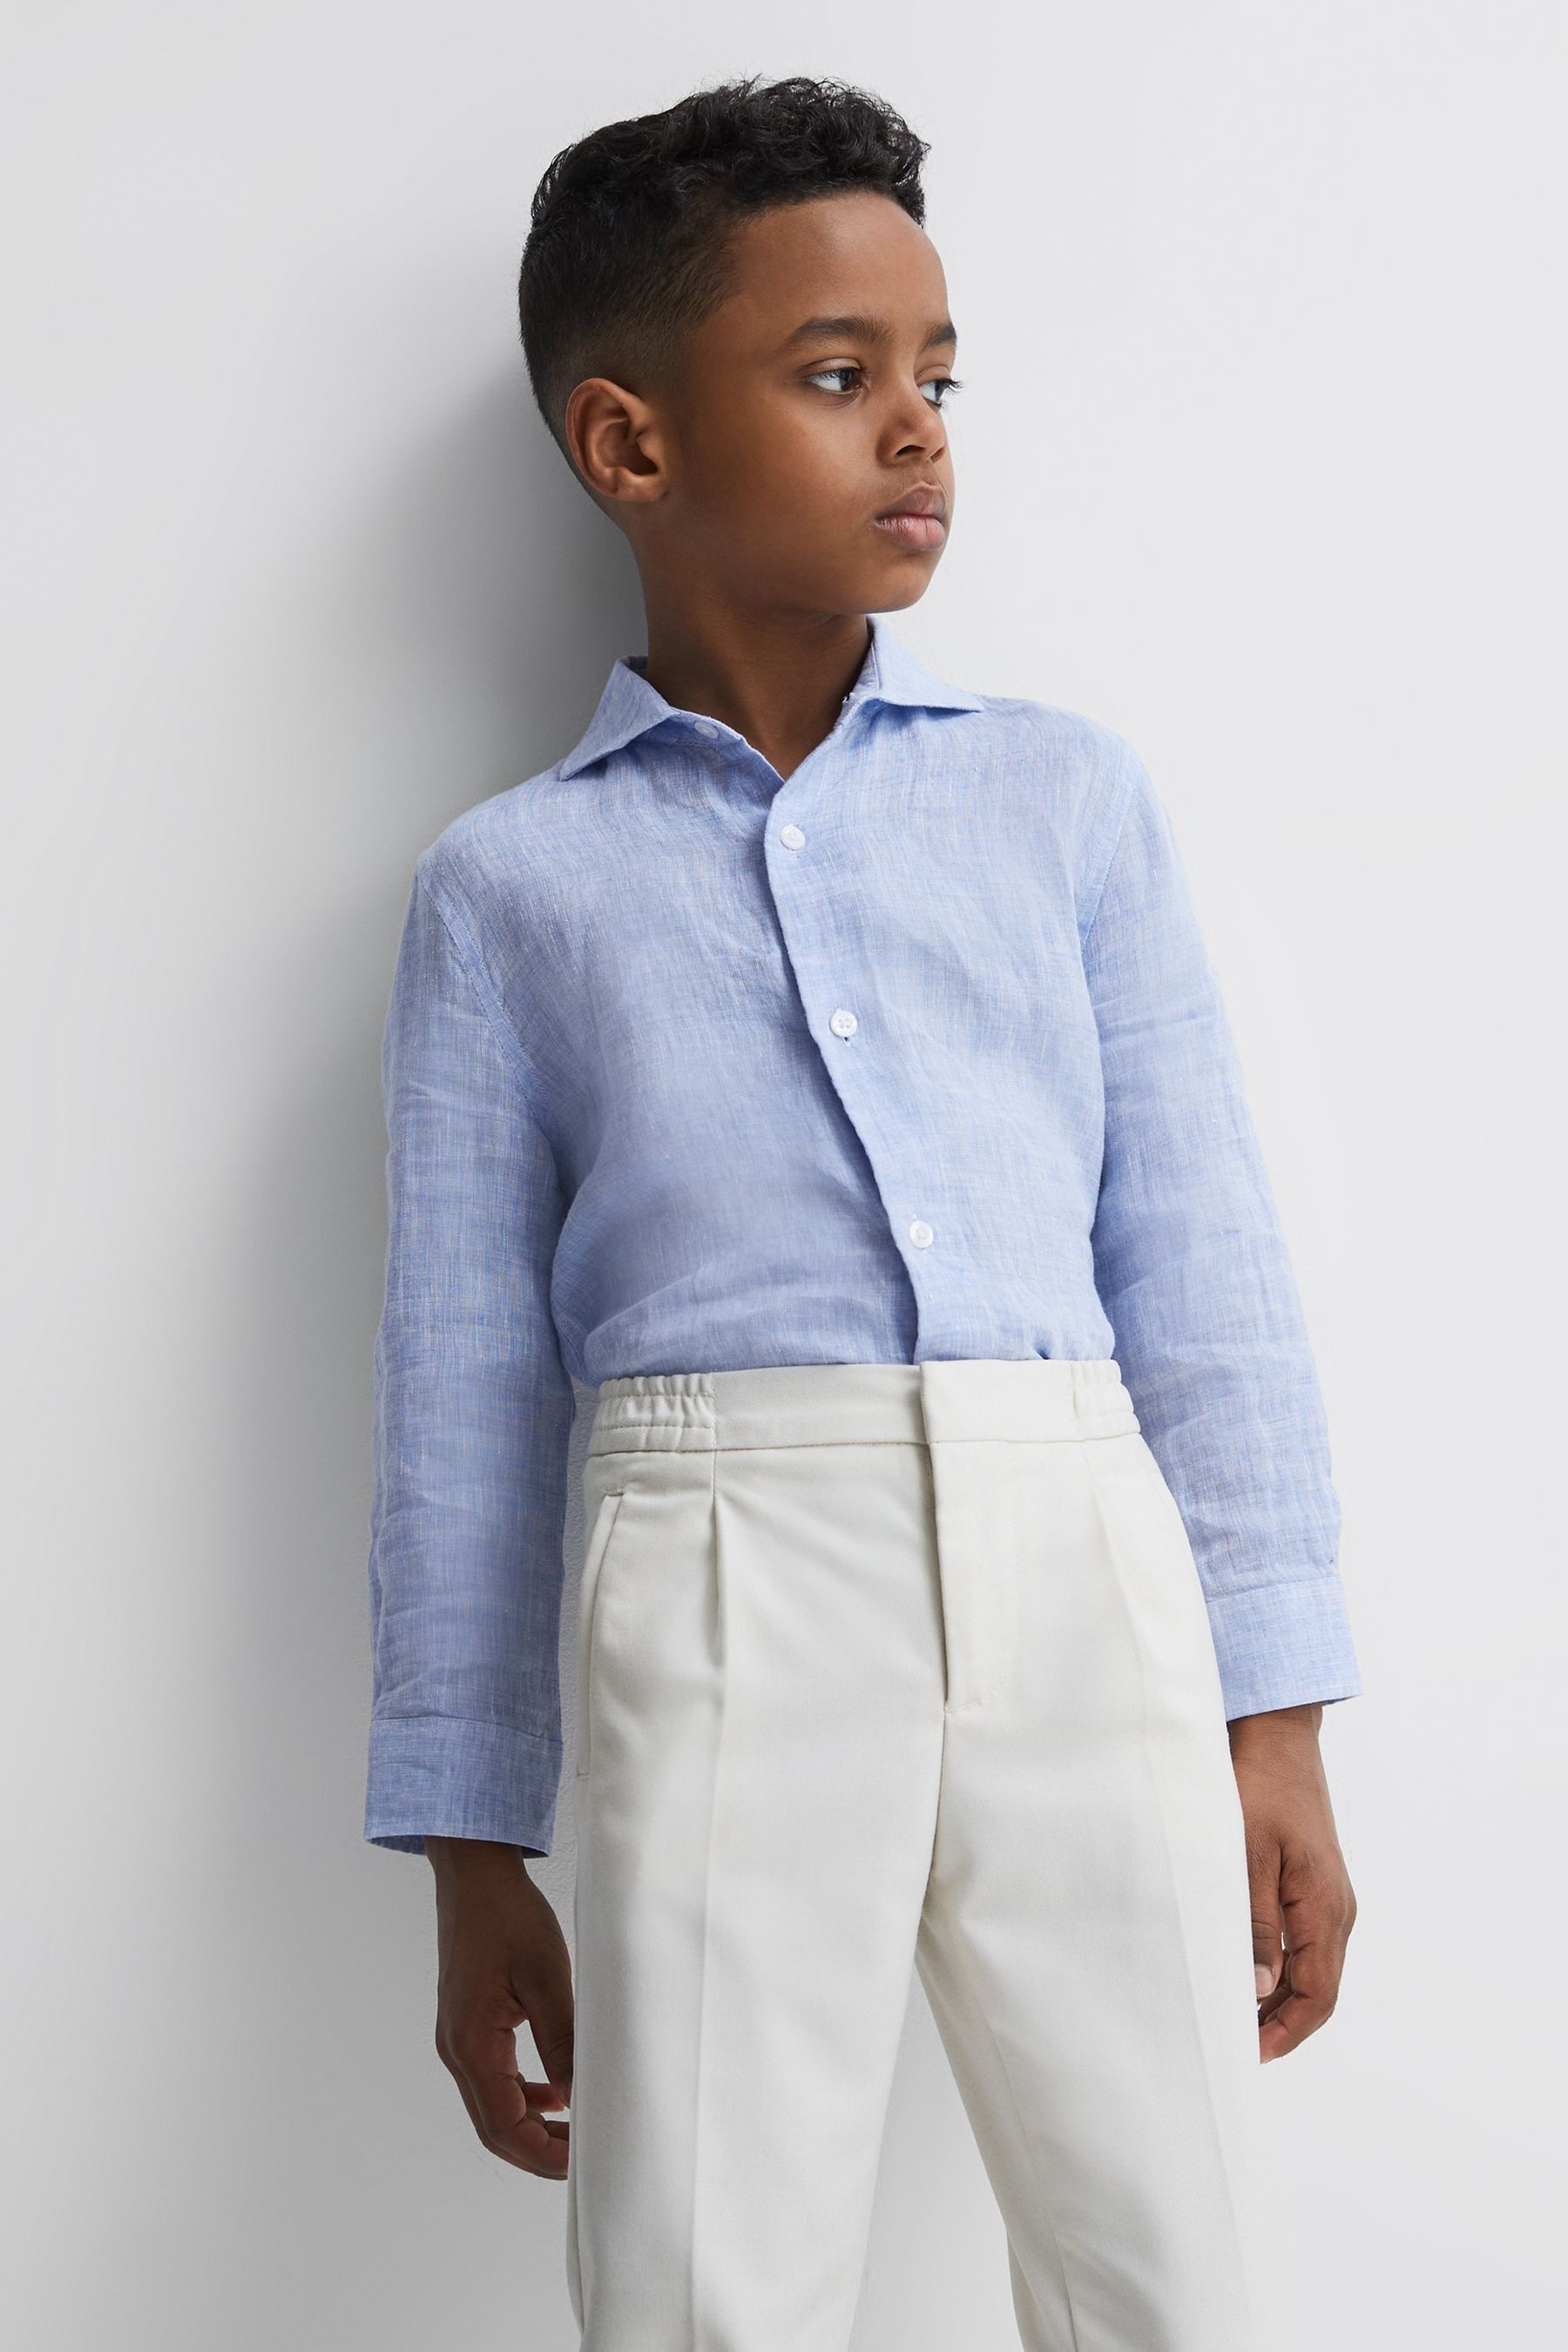 Reiss Ruban - Soft Blue Junior Linen Cutaway Collar Shirt, Age 4-5 Years